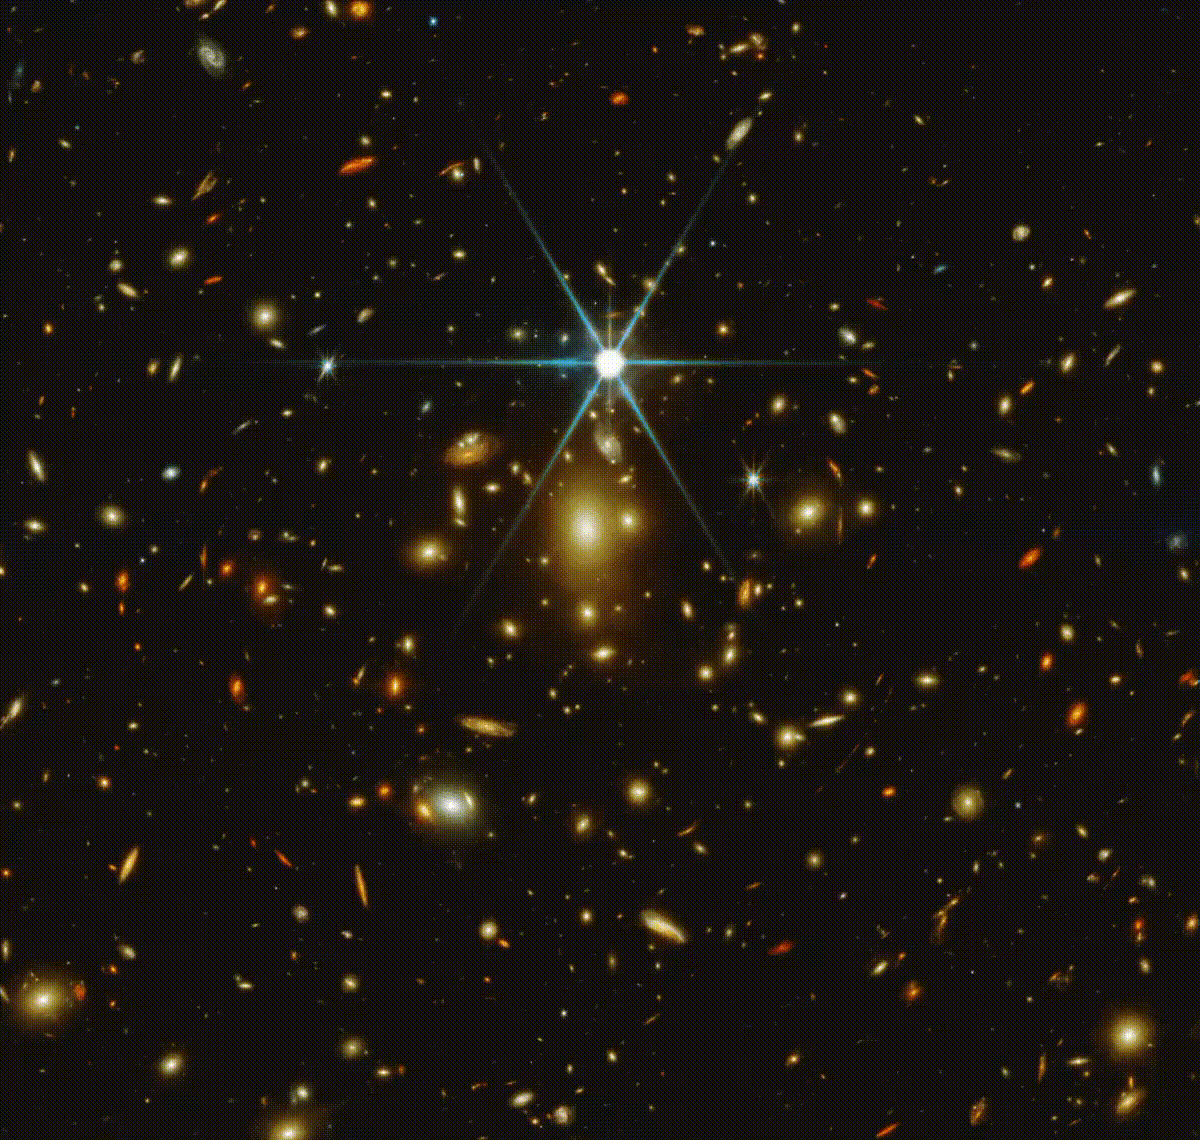 Galáxias brilham e aparecerem enquanto a imagem do Hubble desaparece na imagem do Telescópio James Webb registrada no mesmo aglomerado de galáxias (Foto: @CosmicSprngJWST/Twitter/Reprodução)